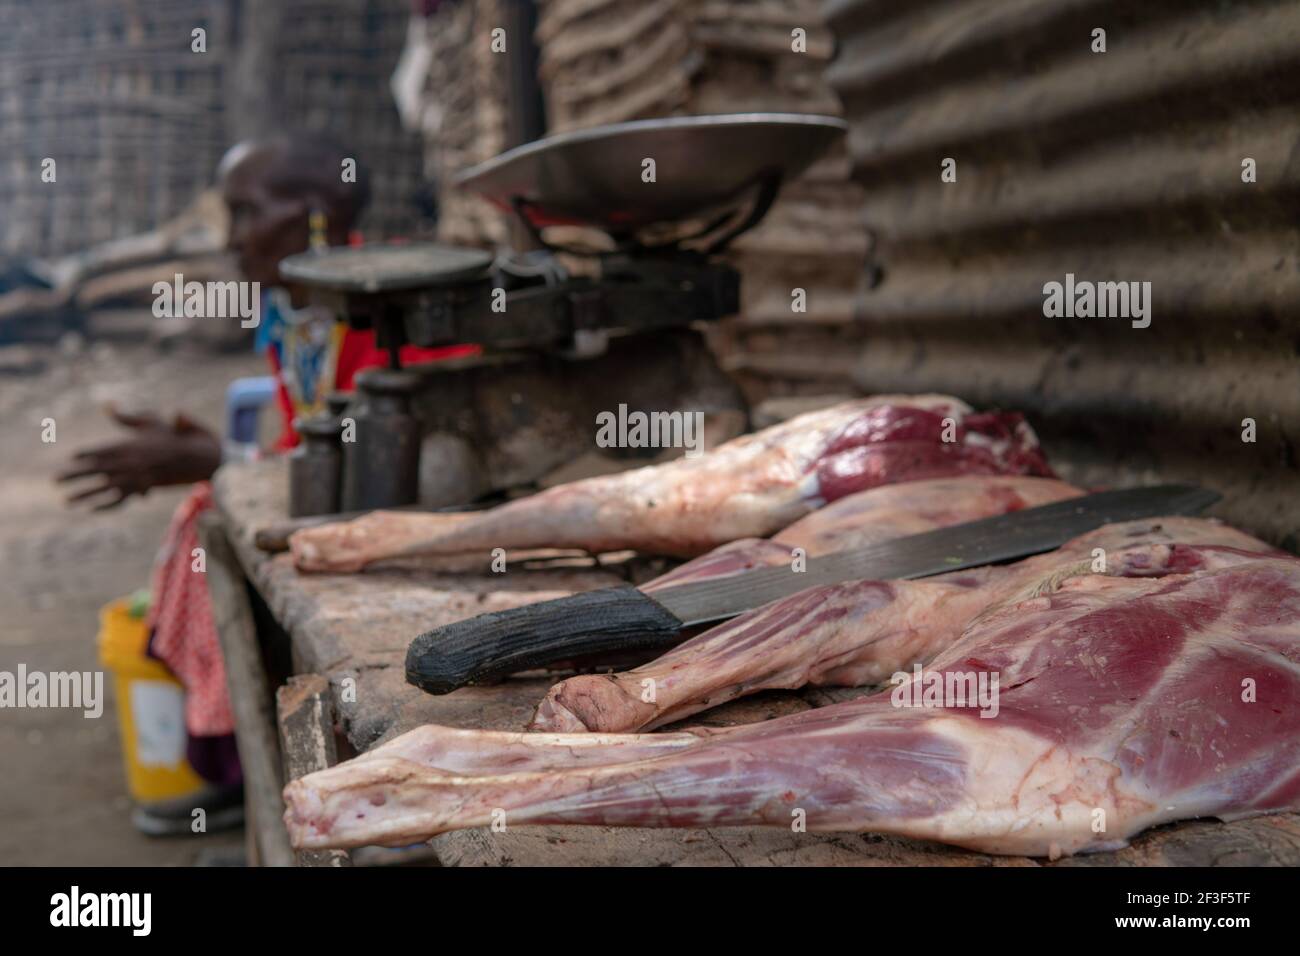 Engare Sero, Tanzanie - janvier 2020 : lieu de cuisine africaine dans le village de Masai. Chèvre jambes de viande fraîche et grand couteau de machette Banque D'Images